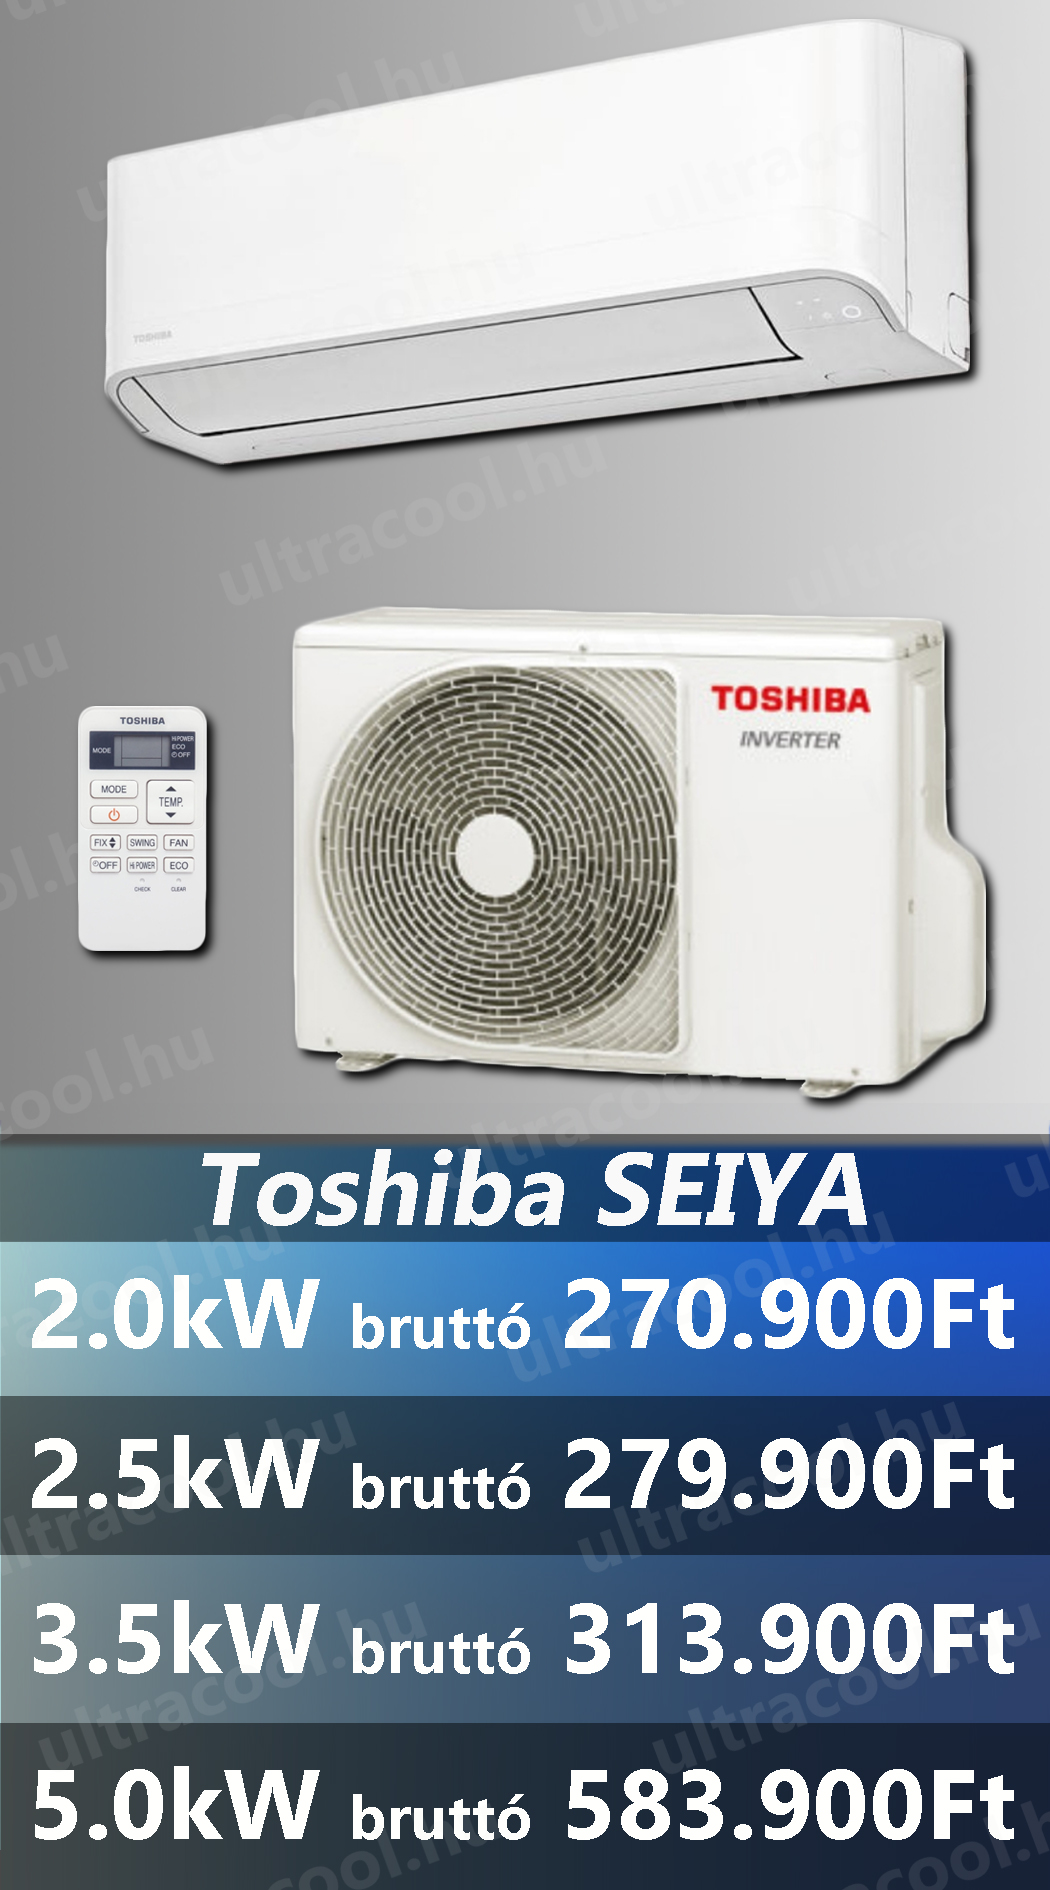 Toshiba Seiya